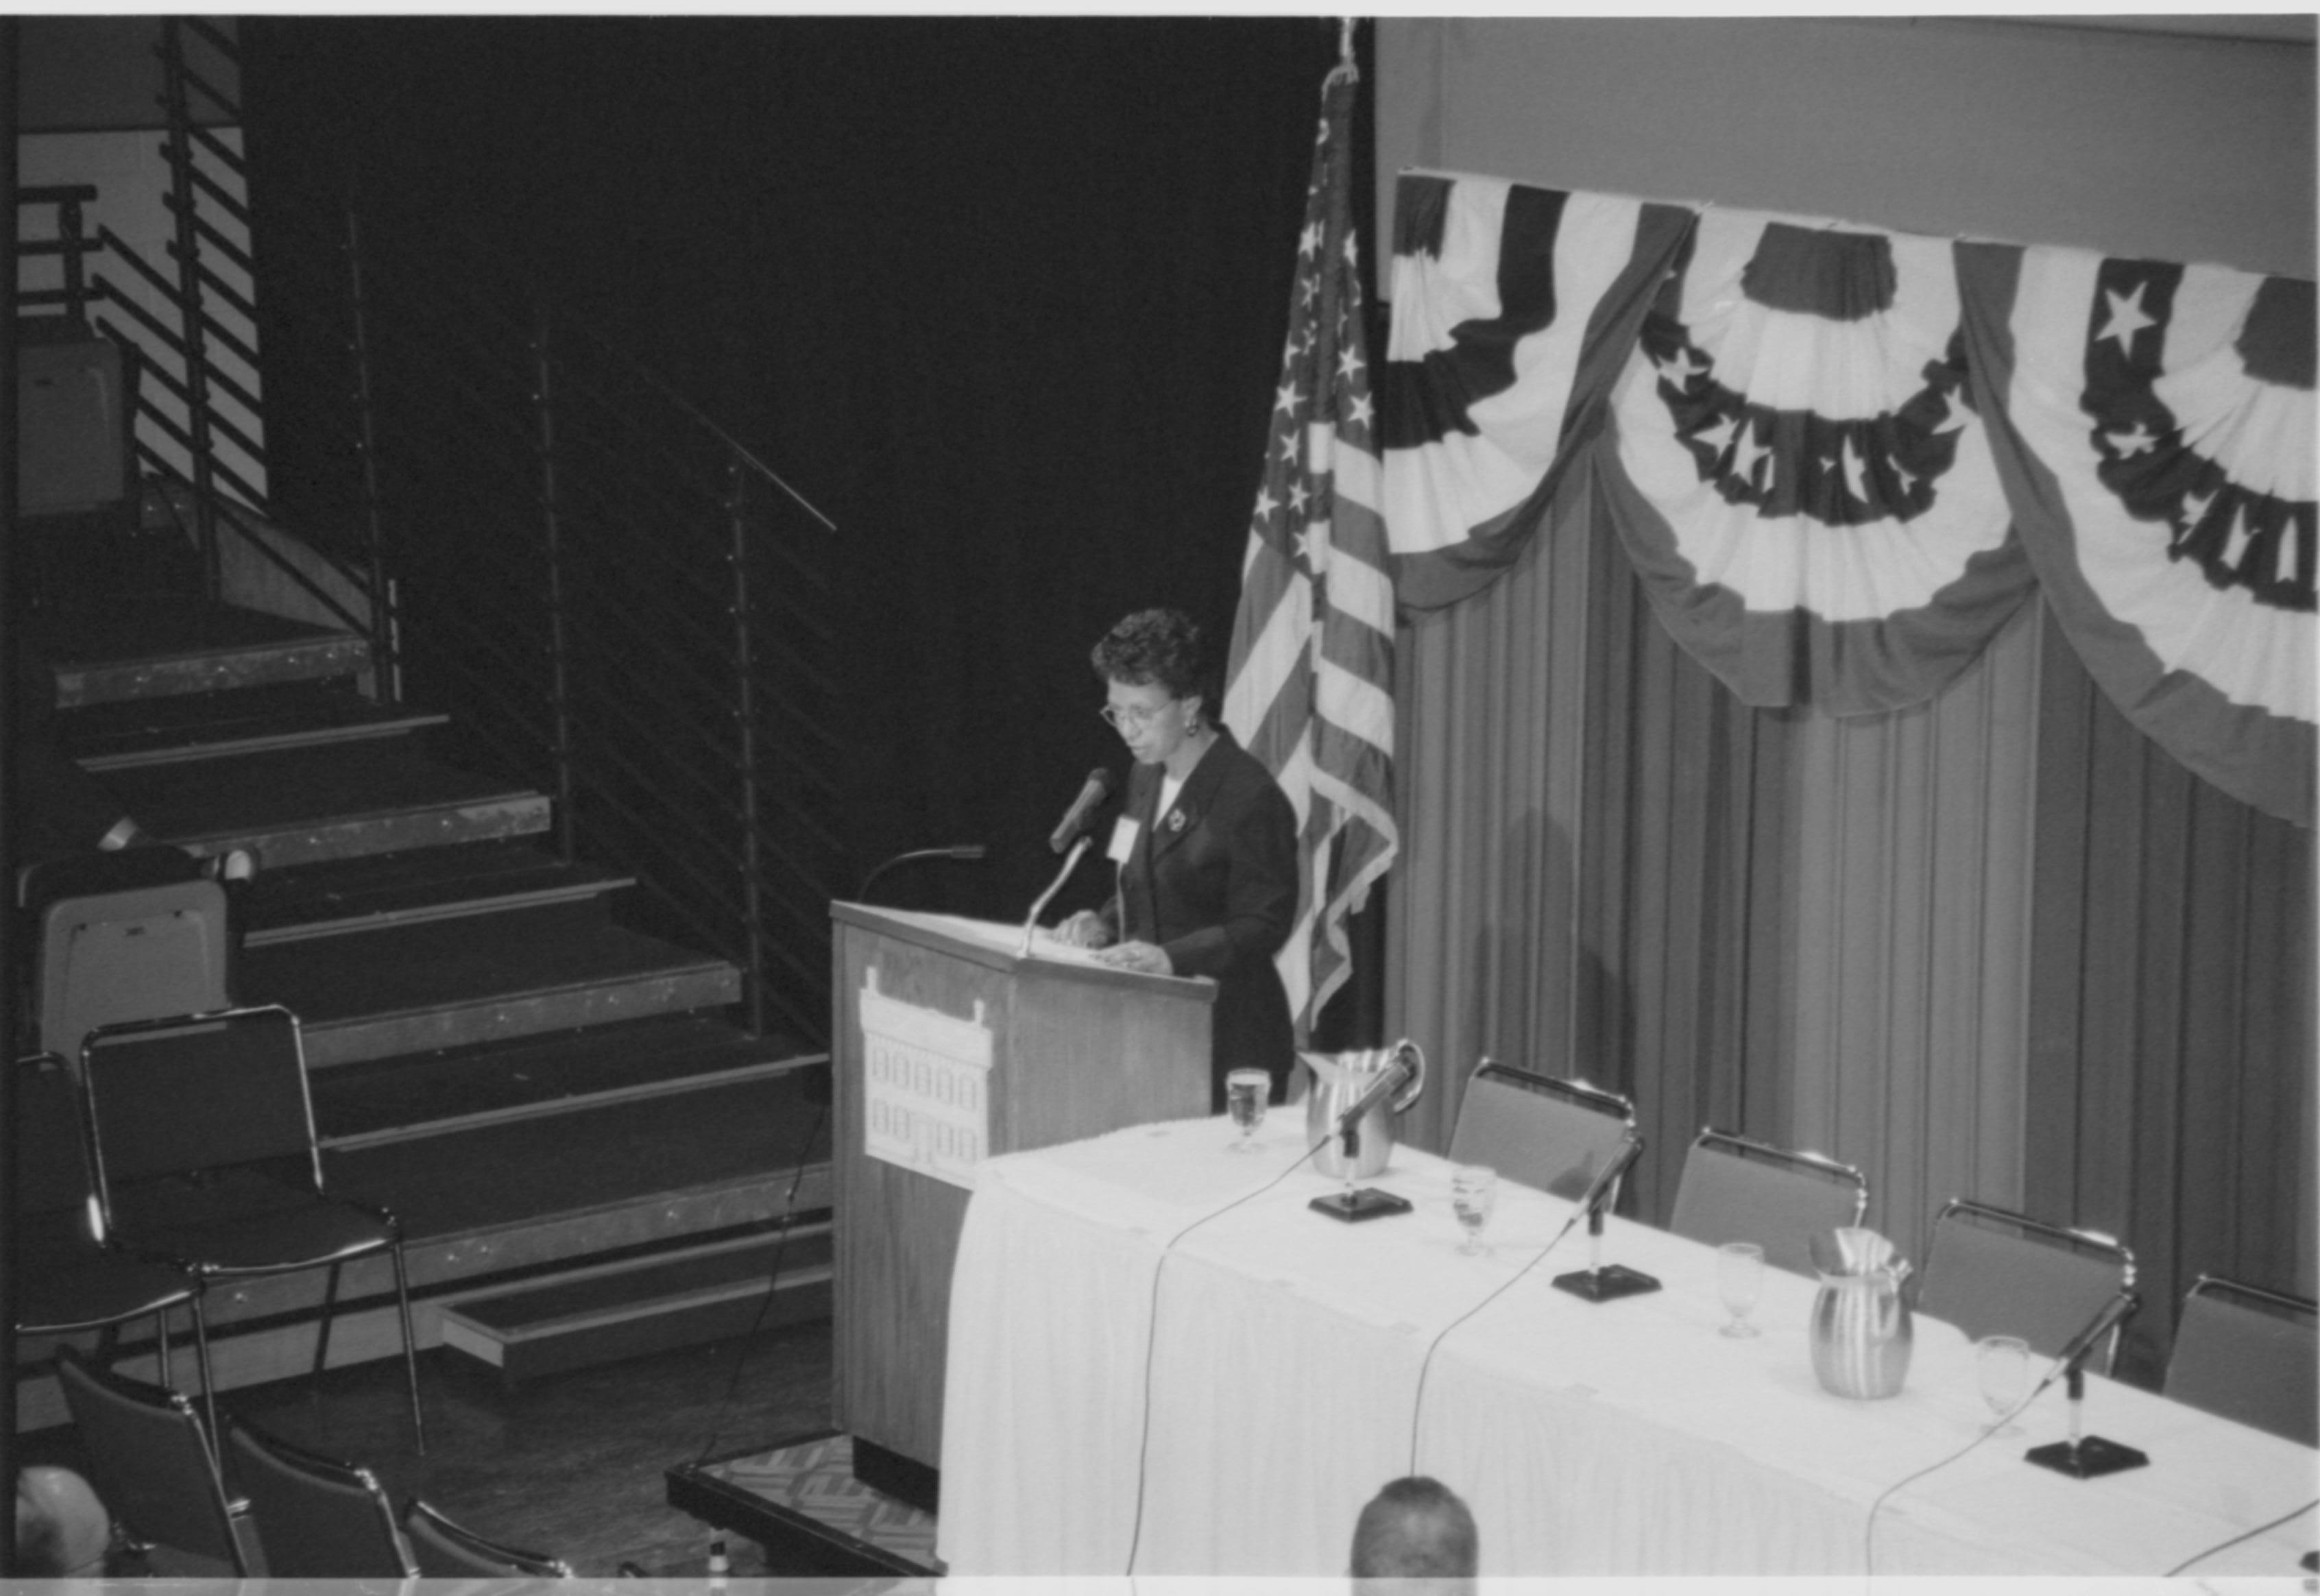 Lady speaking at podium, looking at notes. 1999-16; 33 Colloquium, 1999